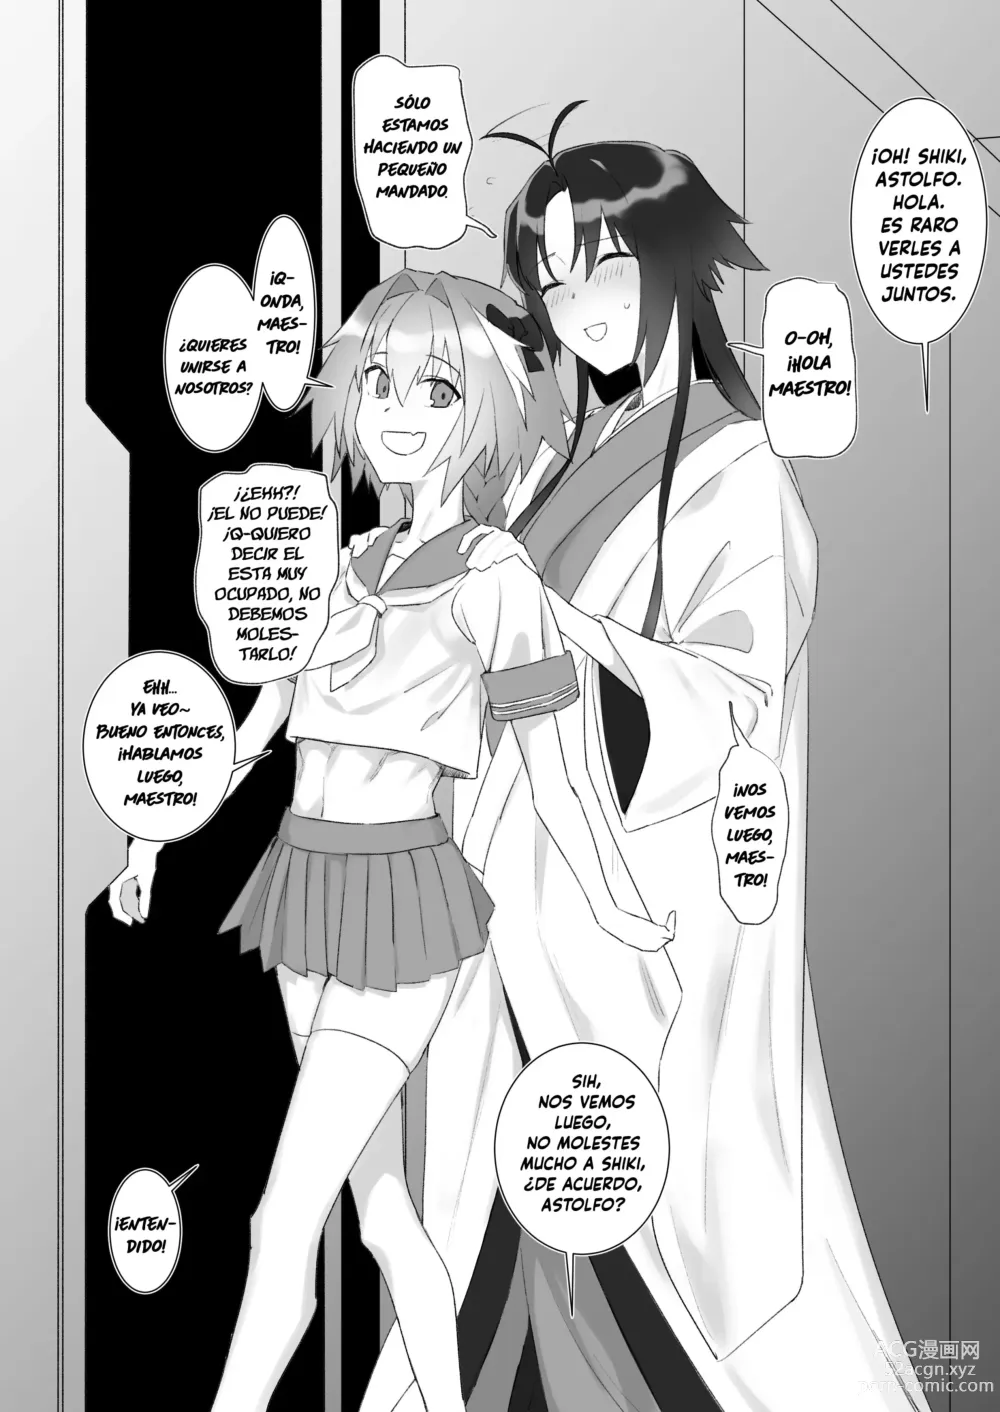 Page 1 of doujinshi La obsesión de Ryougi Shiki con Astolfo